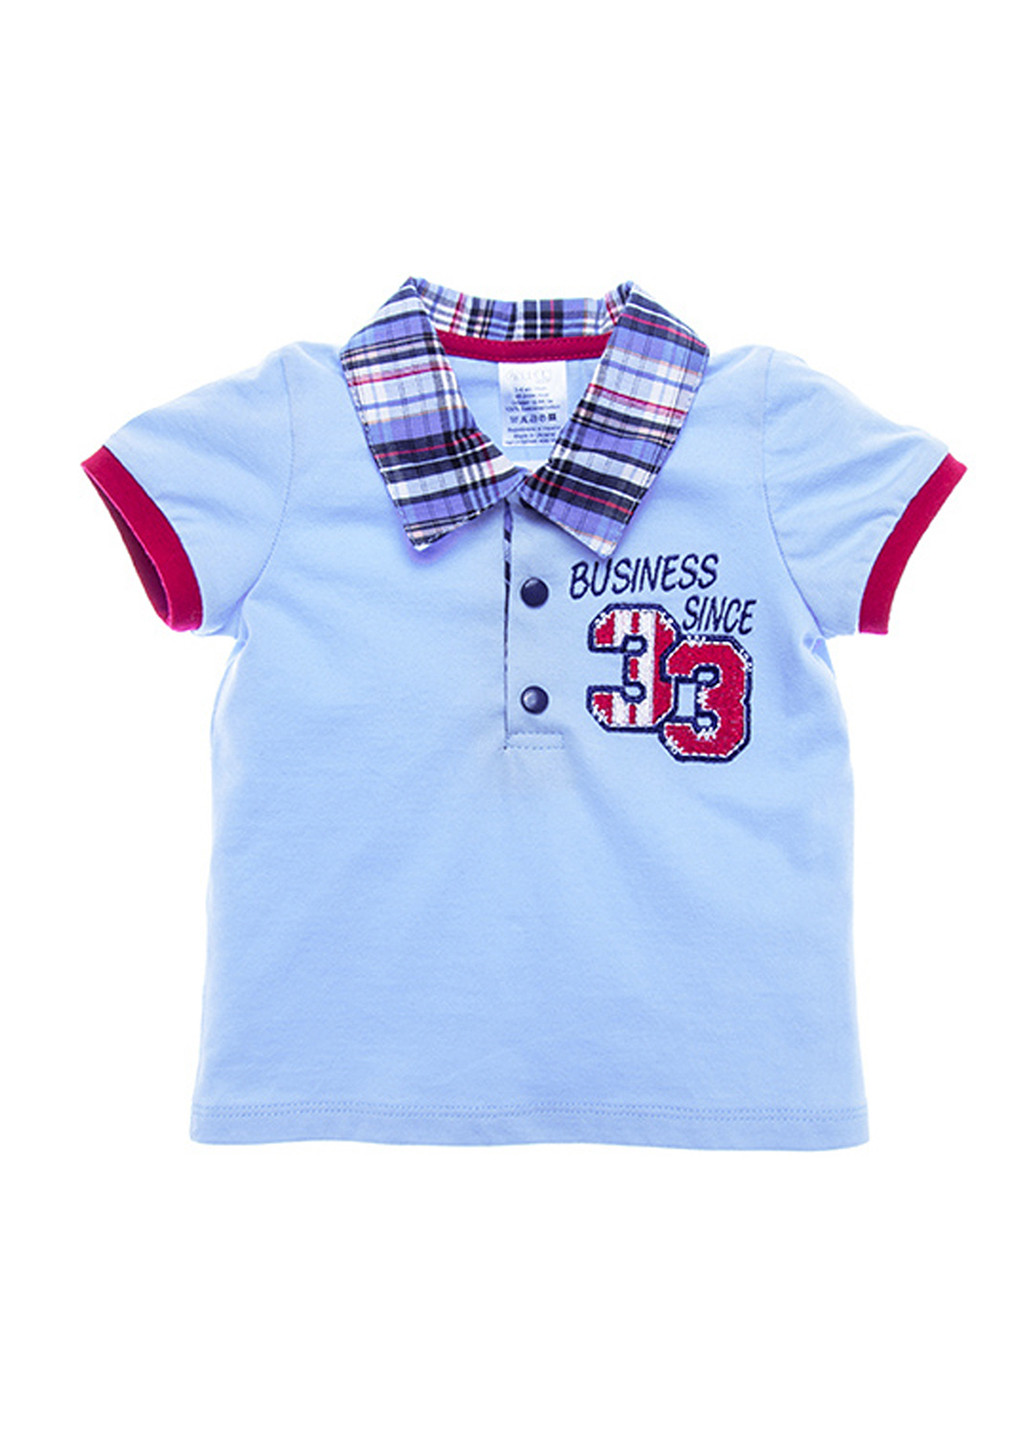 Голубой детская футболка-поло для мальчика Garden Baby с надписью